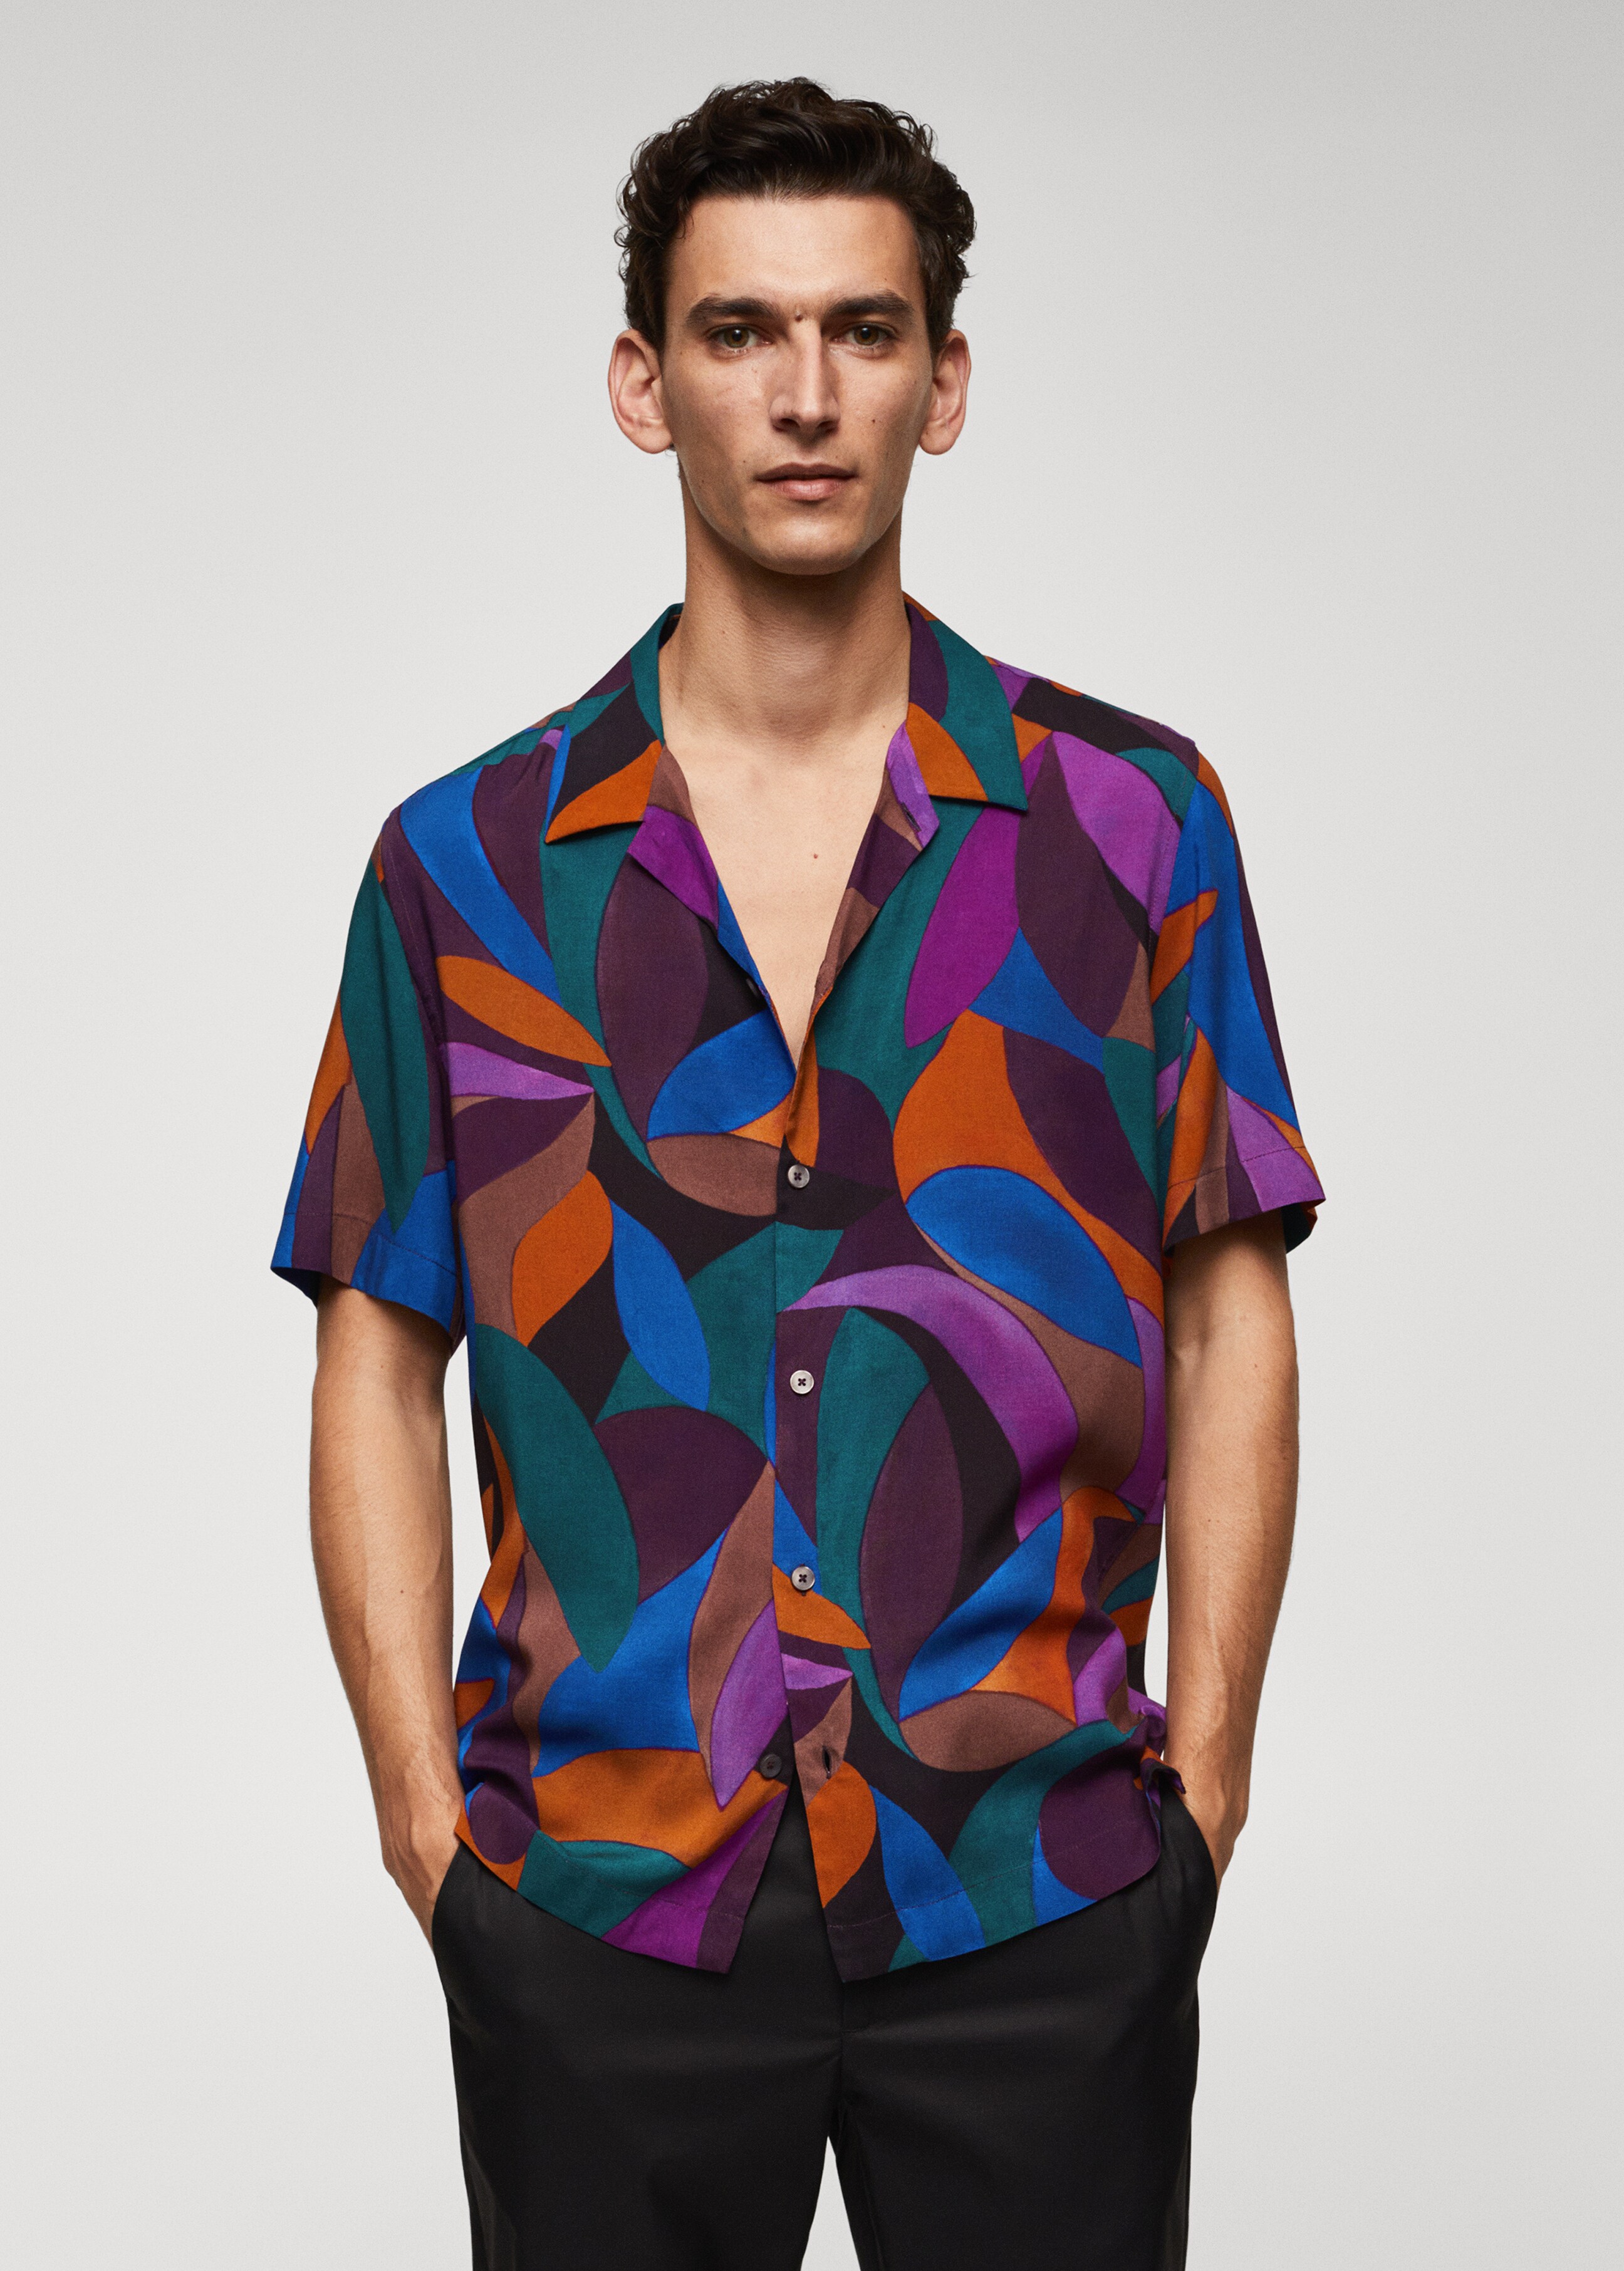 Geometric-print bowling shirt - Medium plane